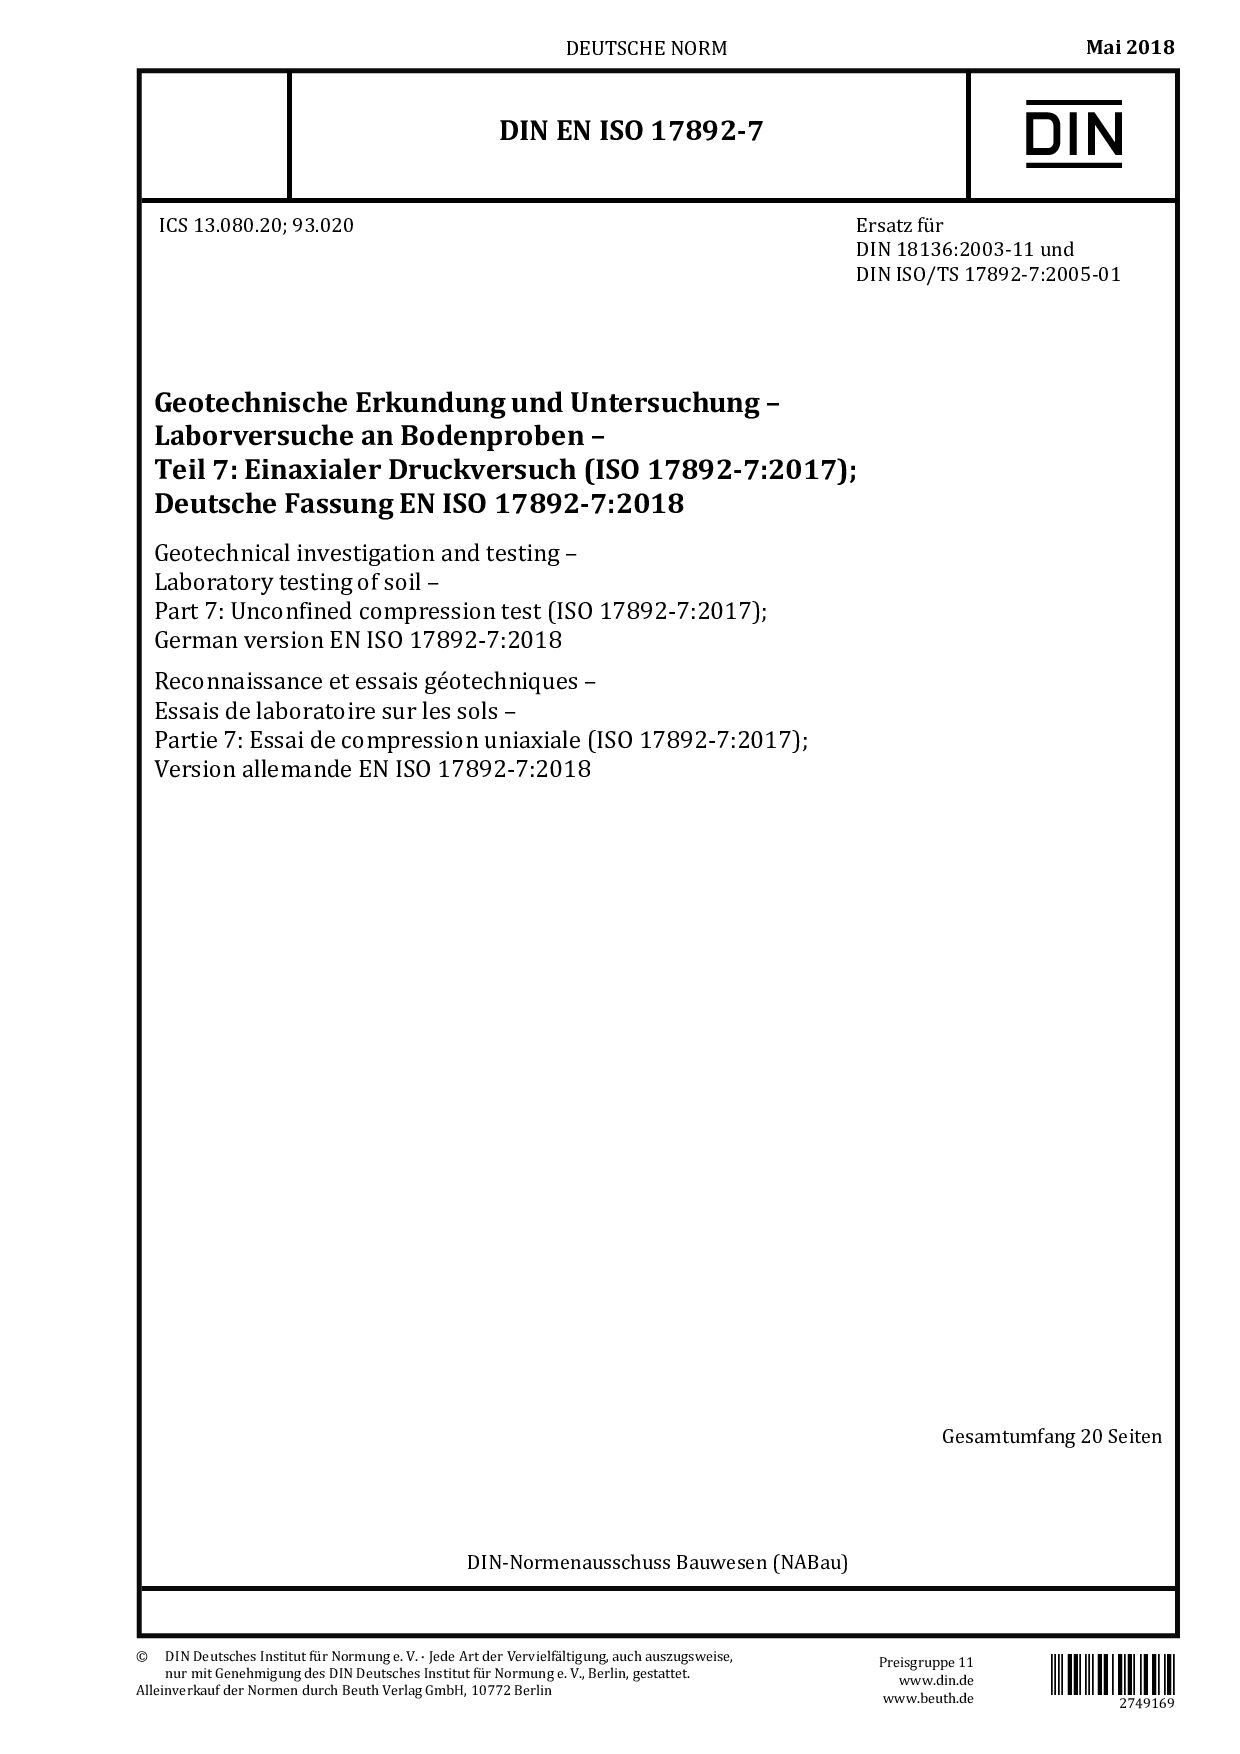 DIN EN ISO 17892-7:2018封面图